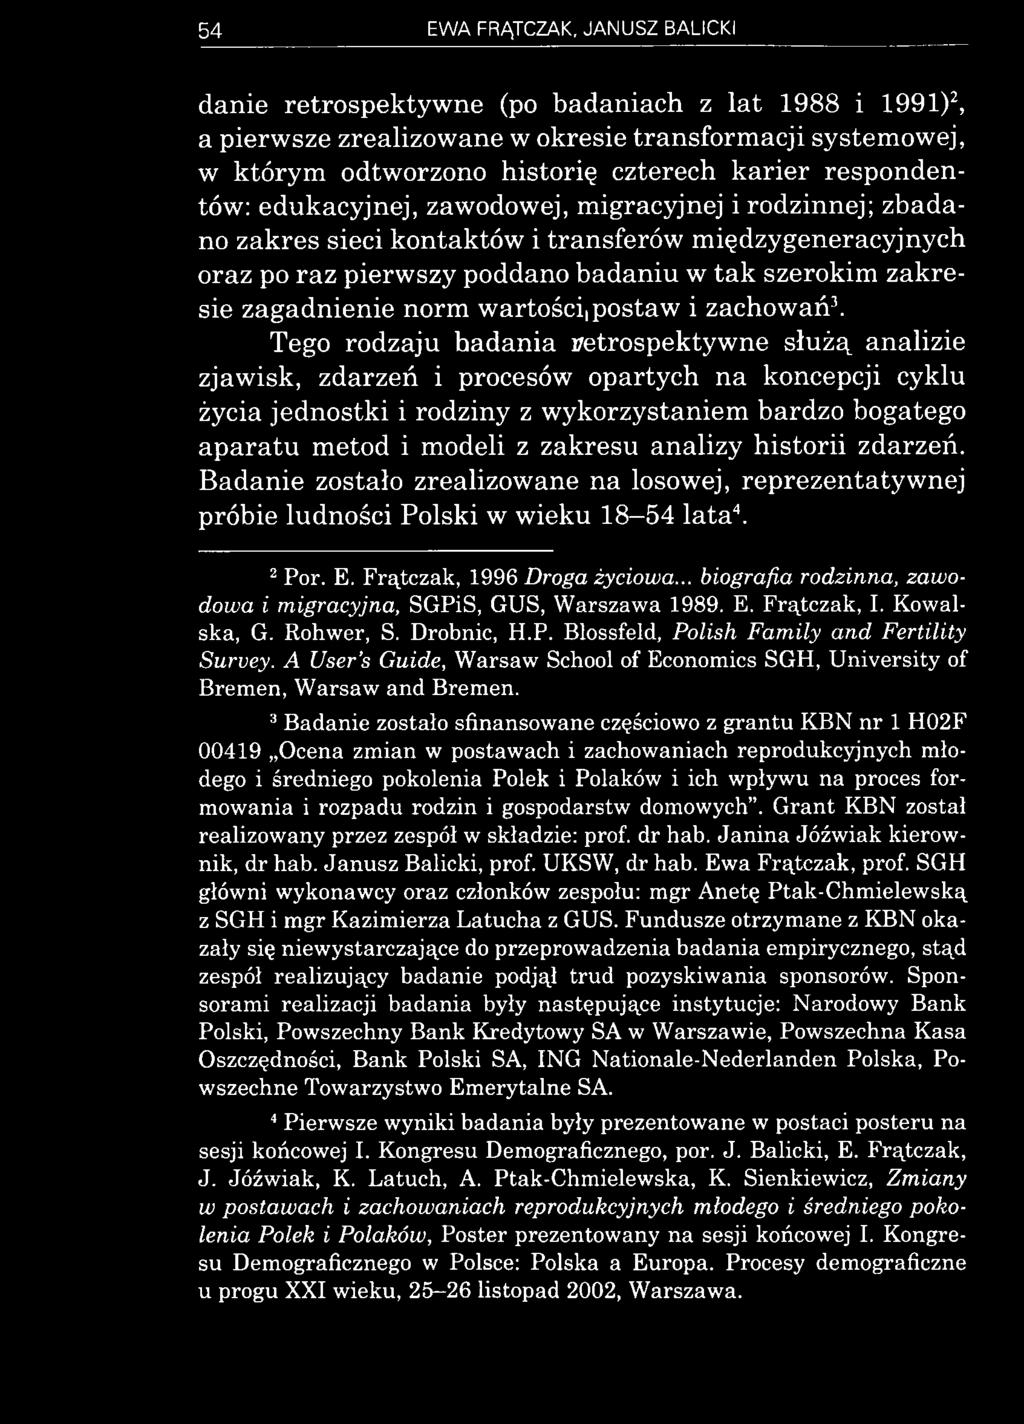 analizy historii zdarzeń. Badanie zostało zrealizowane na losowej, reprezentatywnej próbie ludności Polski w wieku 18-54 lata4. 2 Por. E. Frątczak, 1996 Droga życiowa.